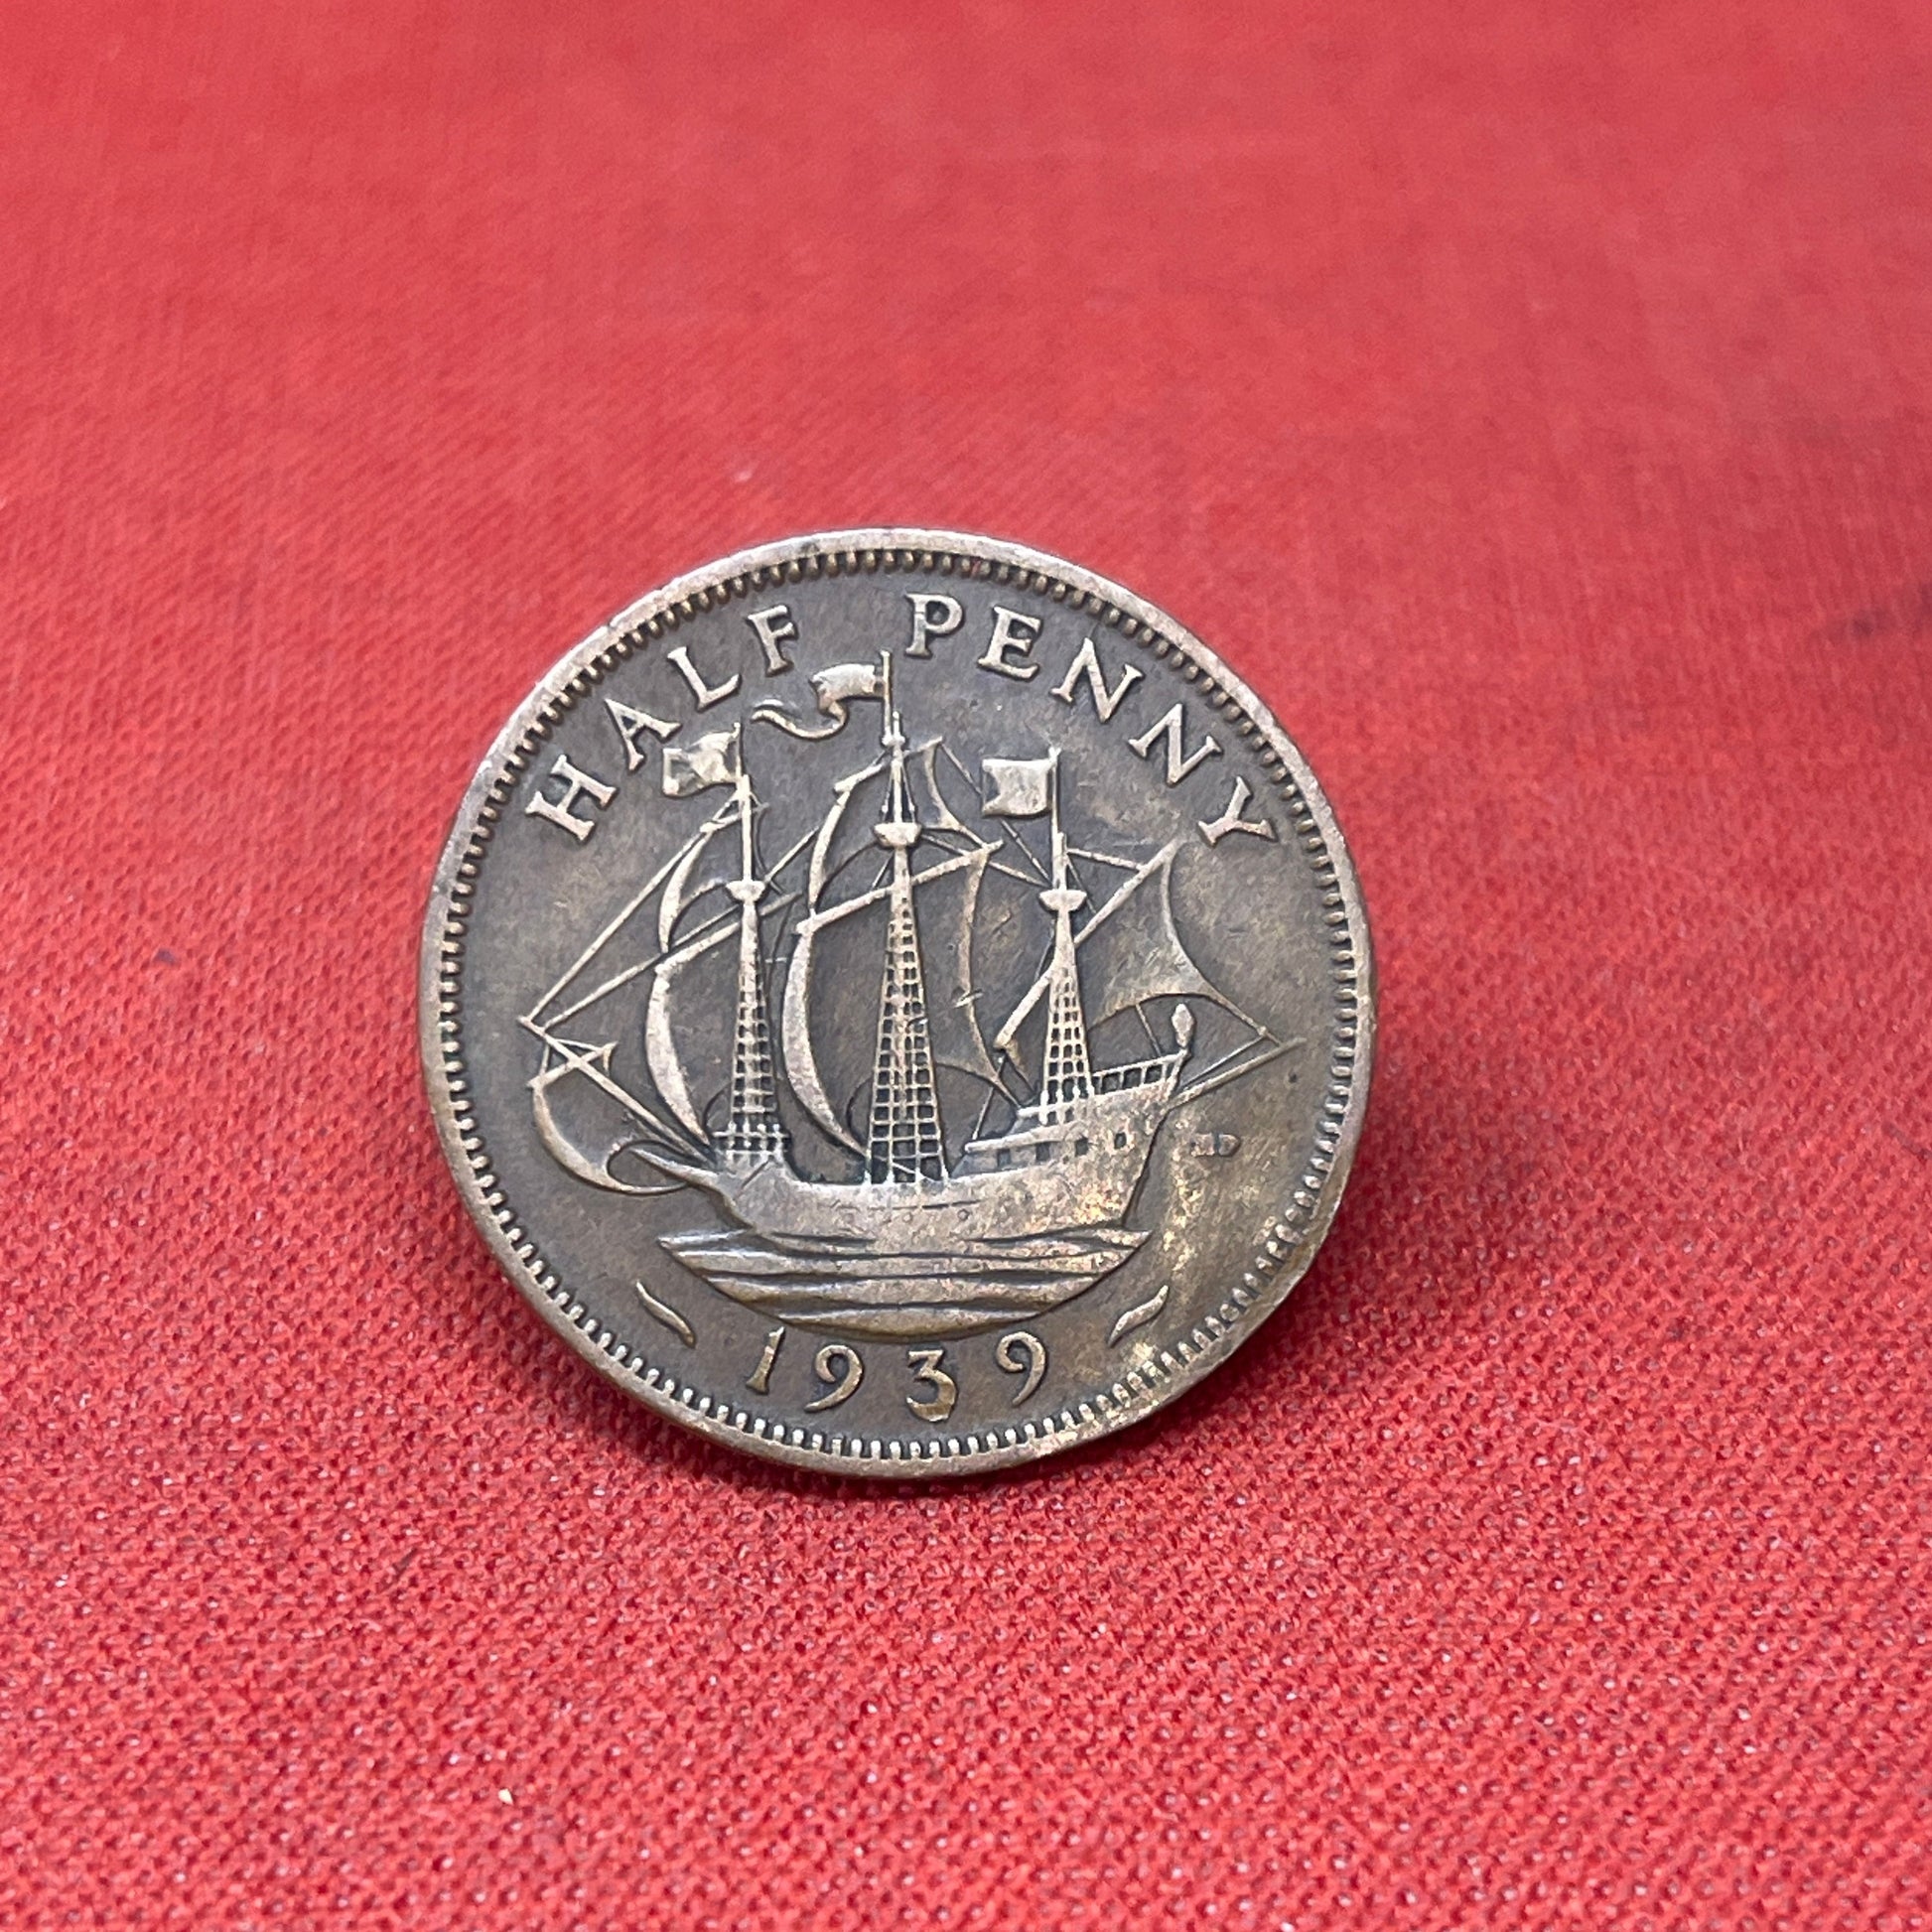 King George VI 1939 Half Penny